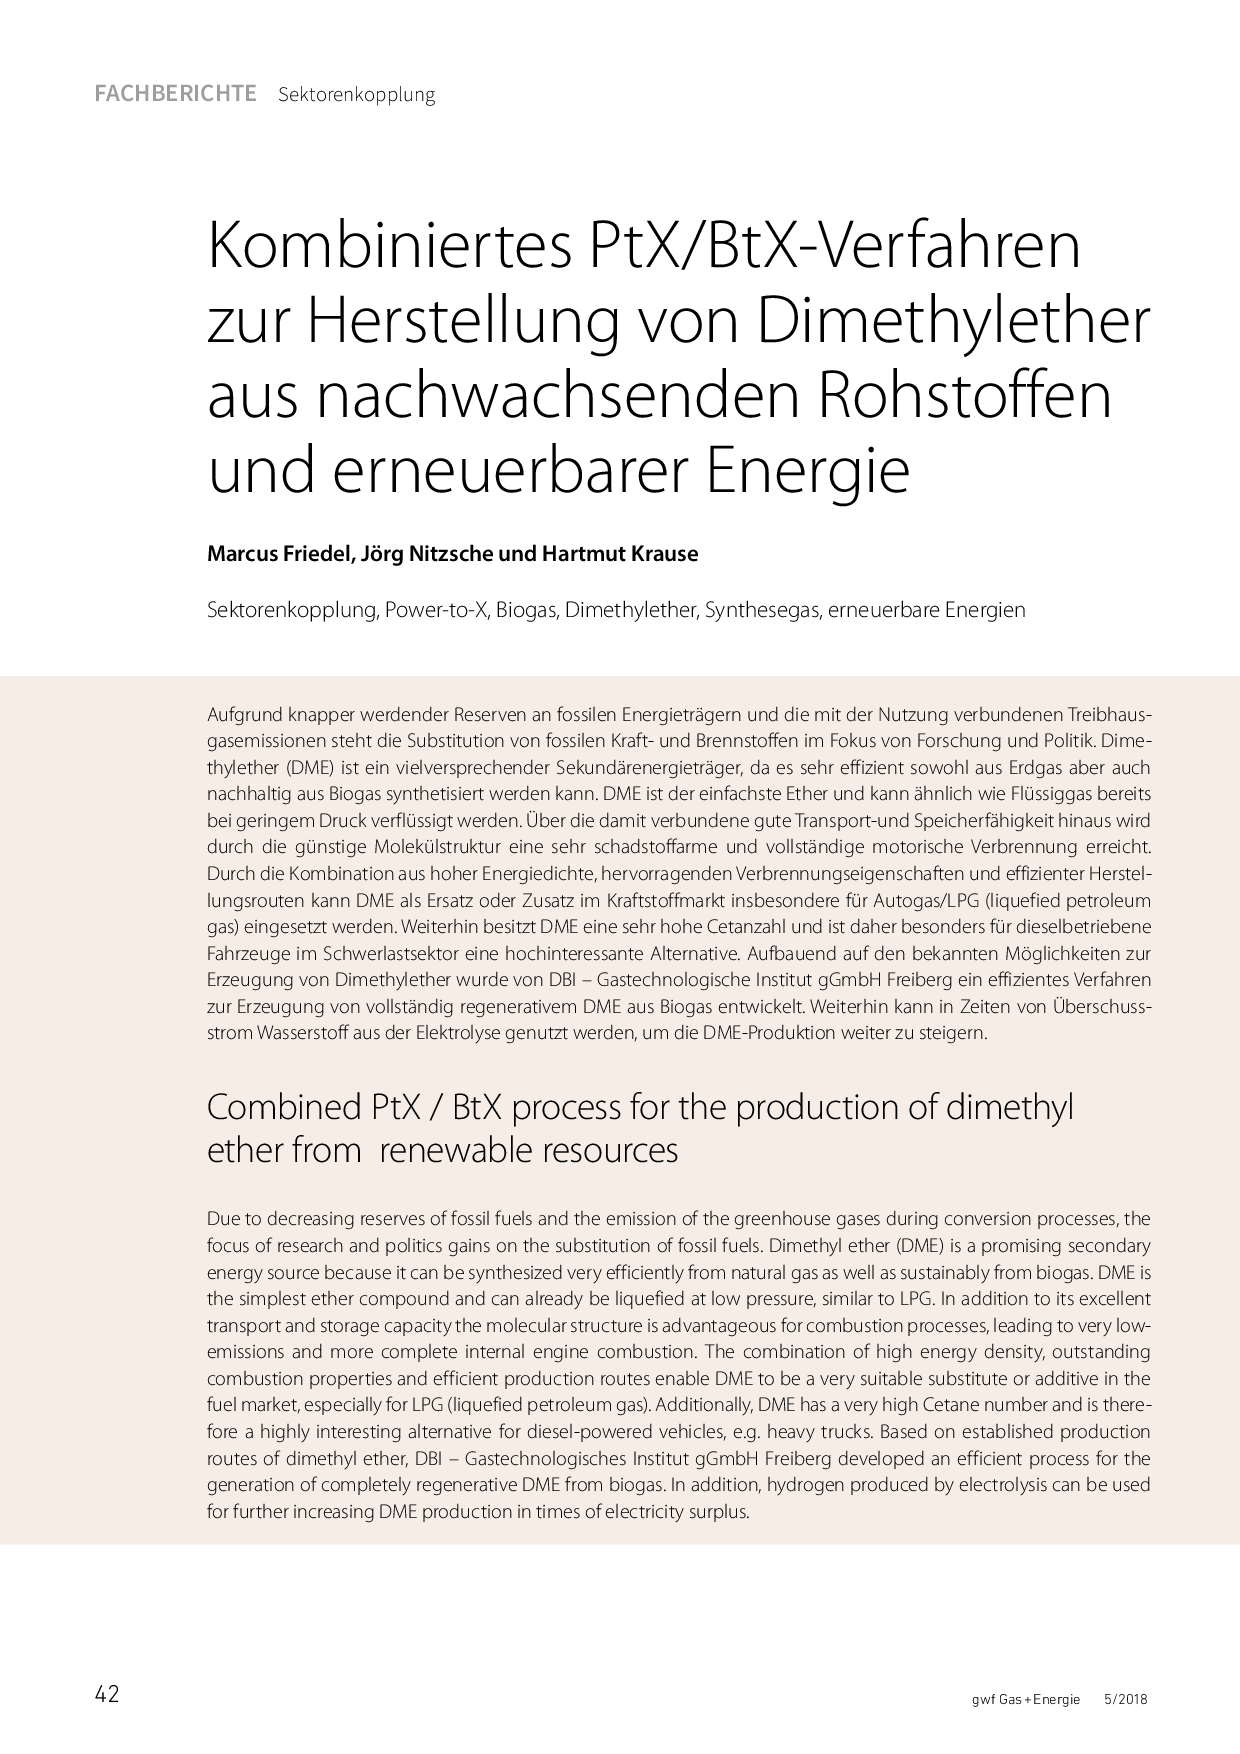 Kombiniertes PtX/BtX-Verfahren zur Herstellung von Dimethylether aus nachwachsenden Rohstoffen und erneuerbarer Energie